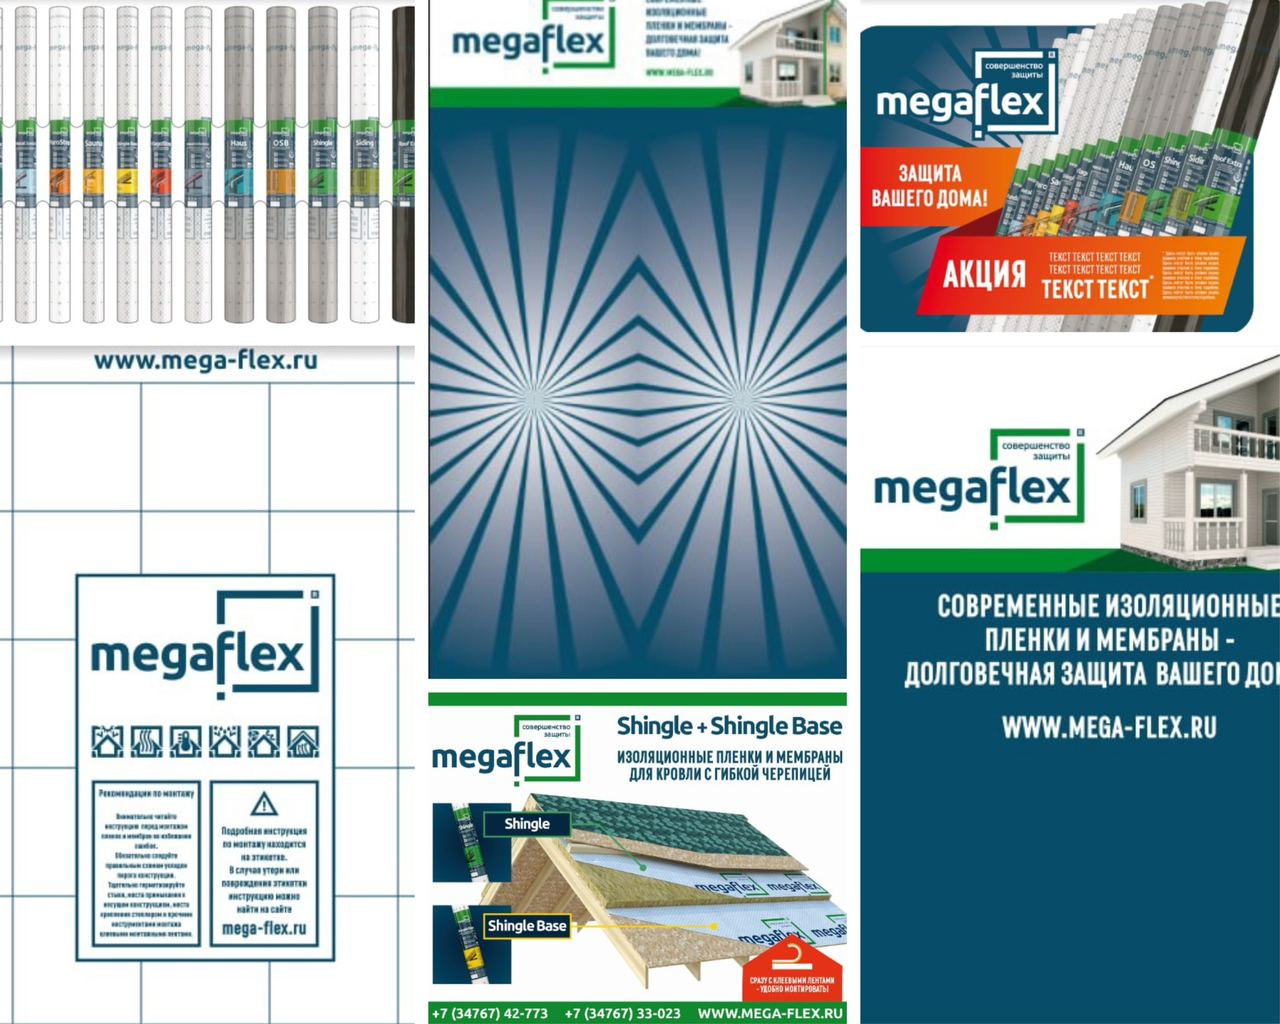 Примеры POSM-материалов для Megaflex